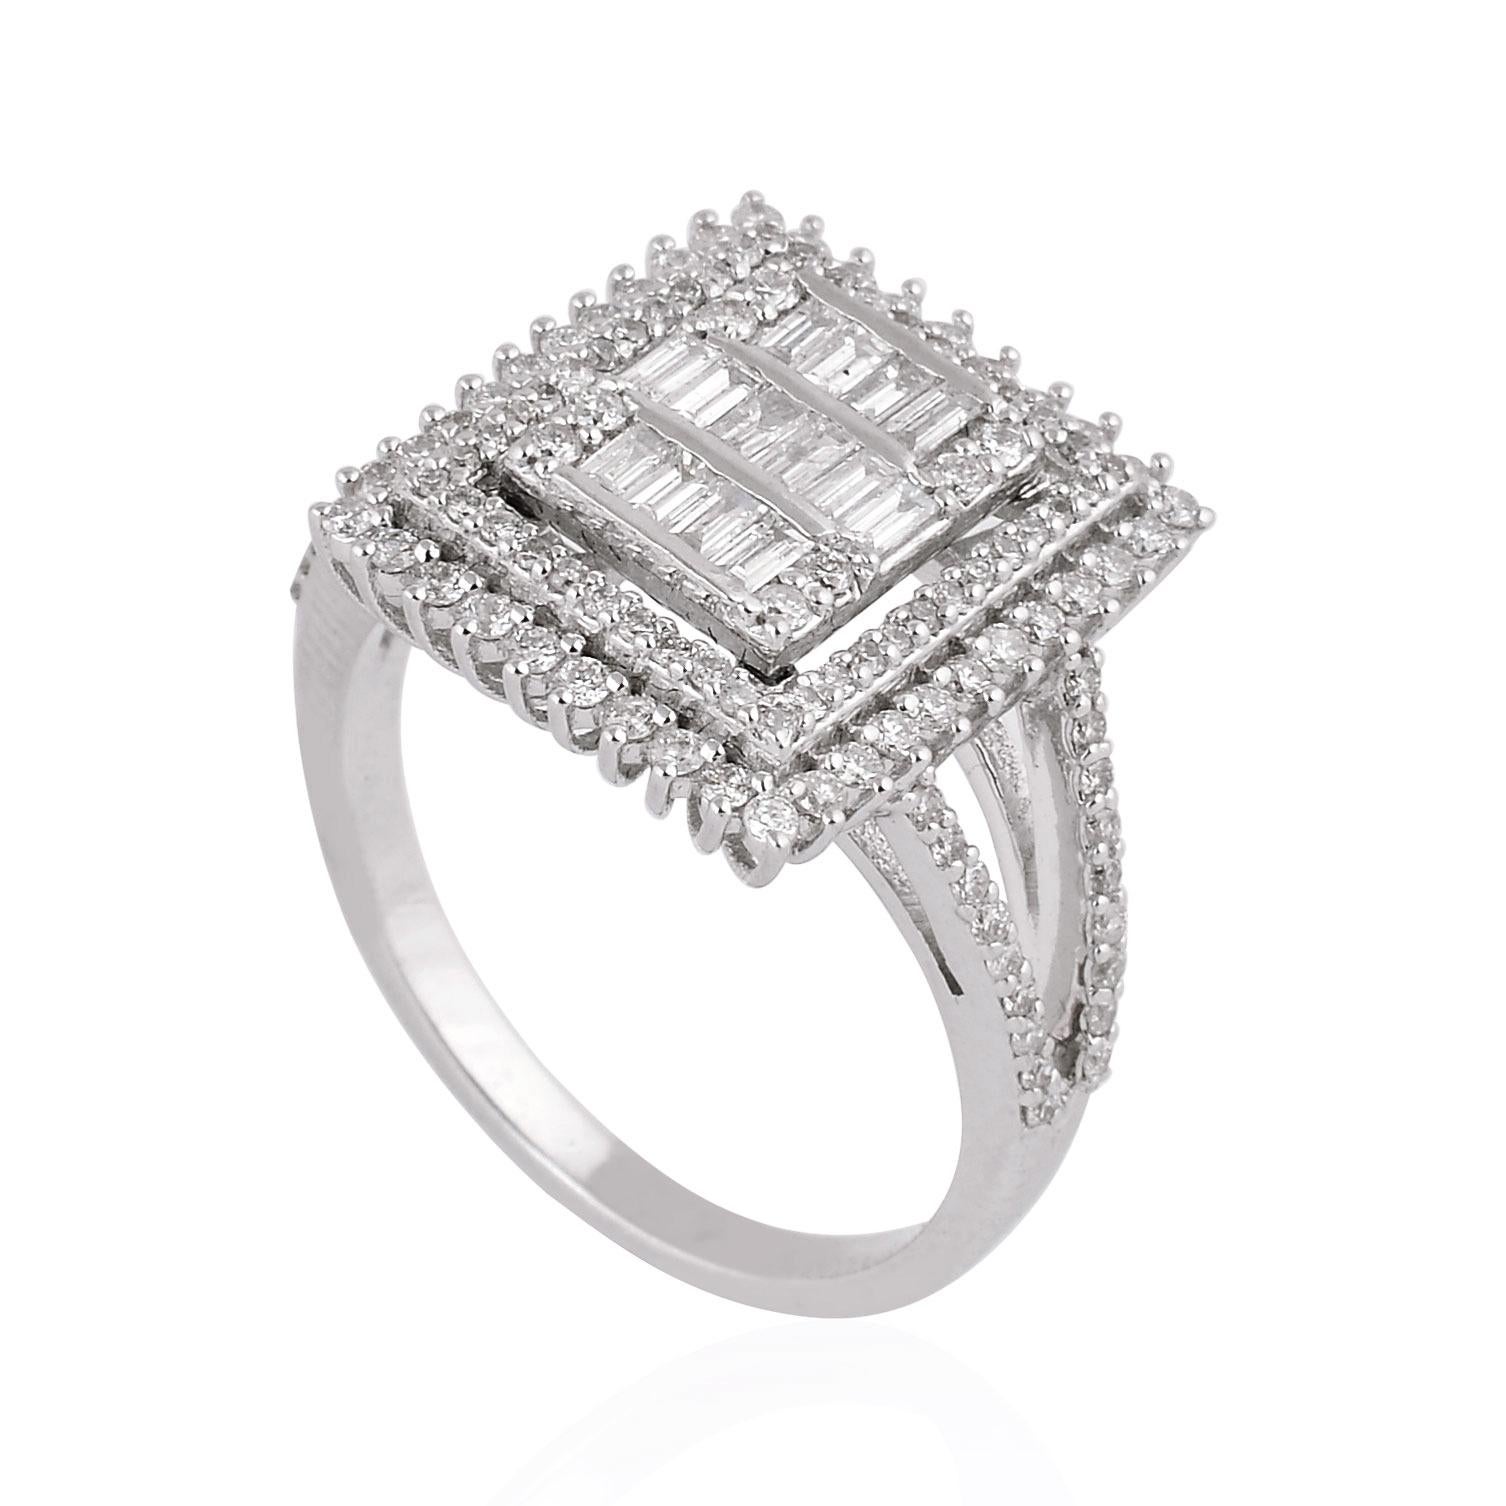 Artikel-Code:- CN-36415C
Bruttogewicht :- 4.79 gm
14k Solid White Gold Gewicht :- 4,58 gm
Natürlicher Diamant Gewicht :- 1.05 Karat  ( DURCHSCHNITTLICHE DIAMANT-REINHEIT SI1-SI2 & FARBE H-I )
Ring Größe :- 7 US & Alle Ringgröße verfügbar

✦